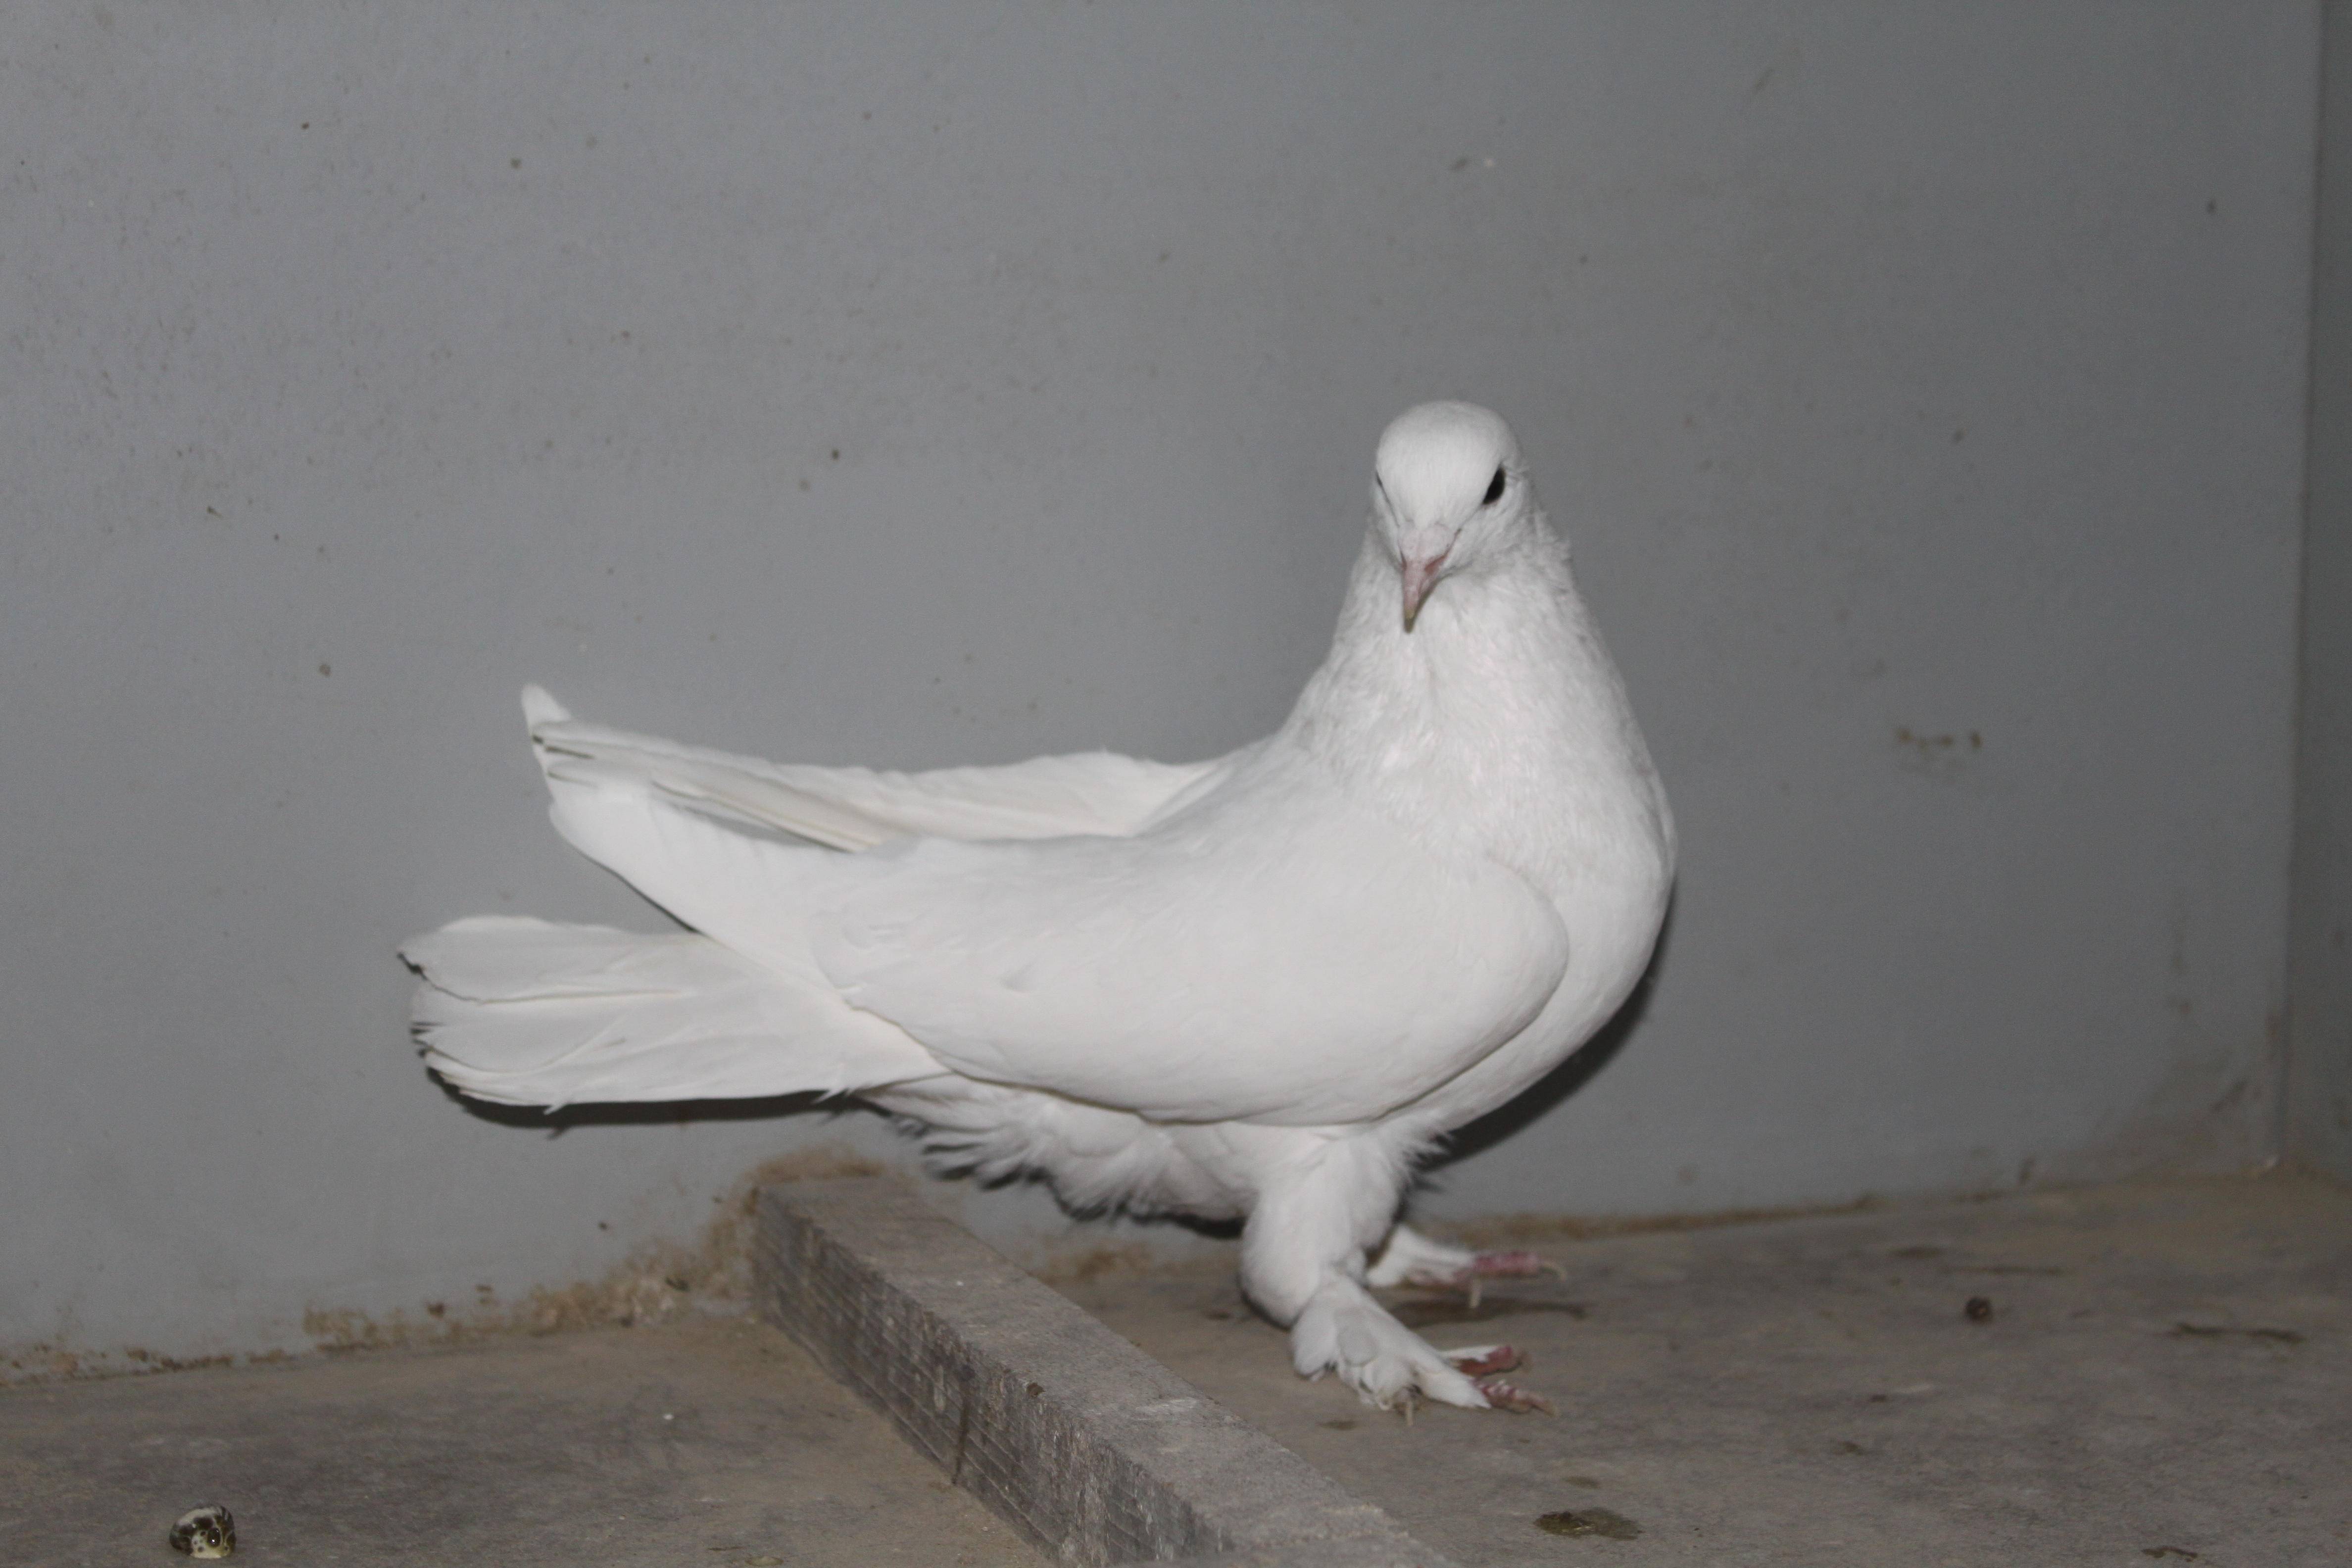 Особенности бойных голубей и описание их видов